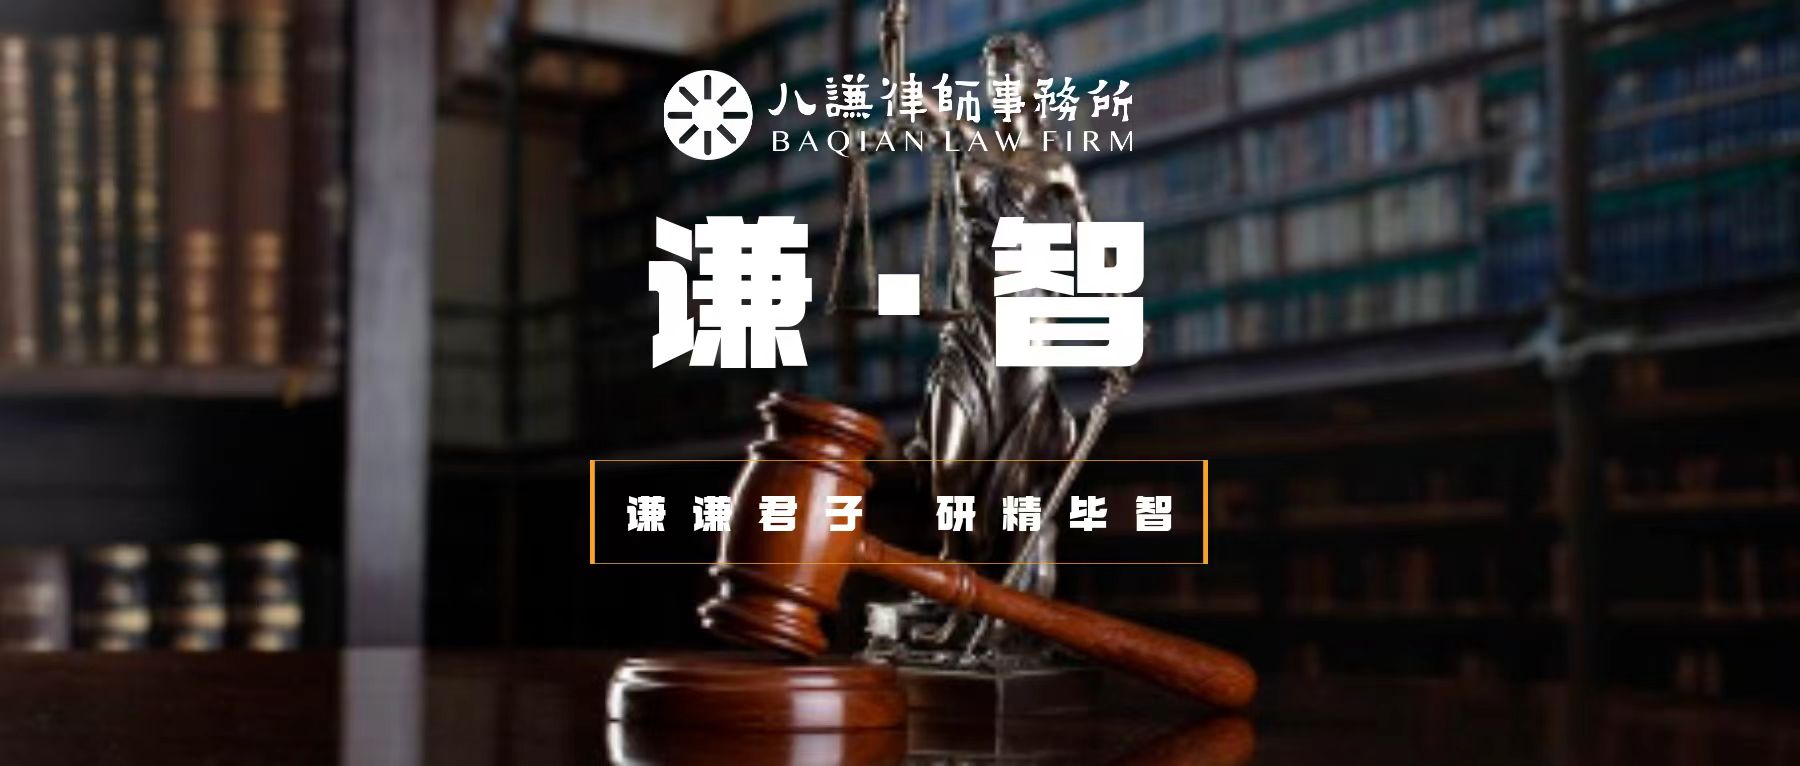 谦智｜特许经营项目争议解决指南--法律路径与实务建议（二）